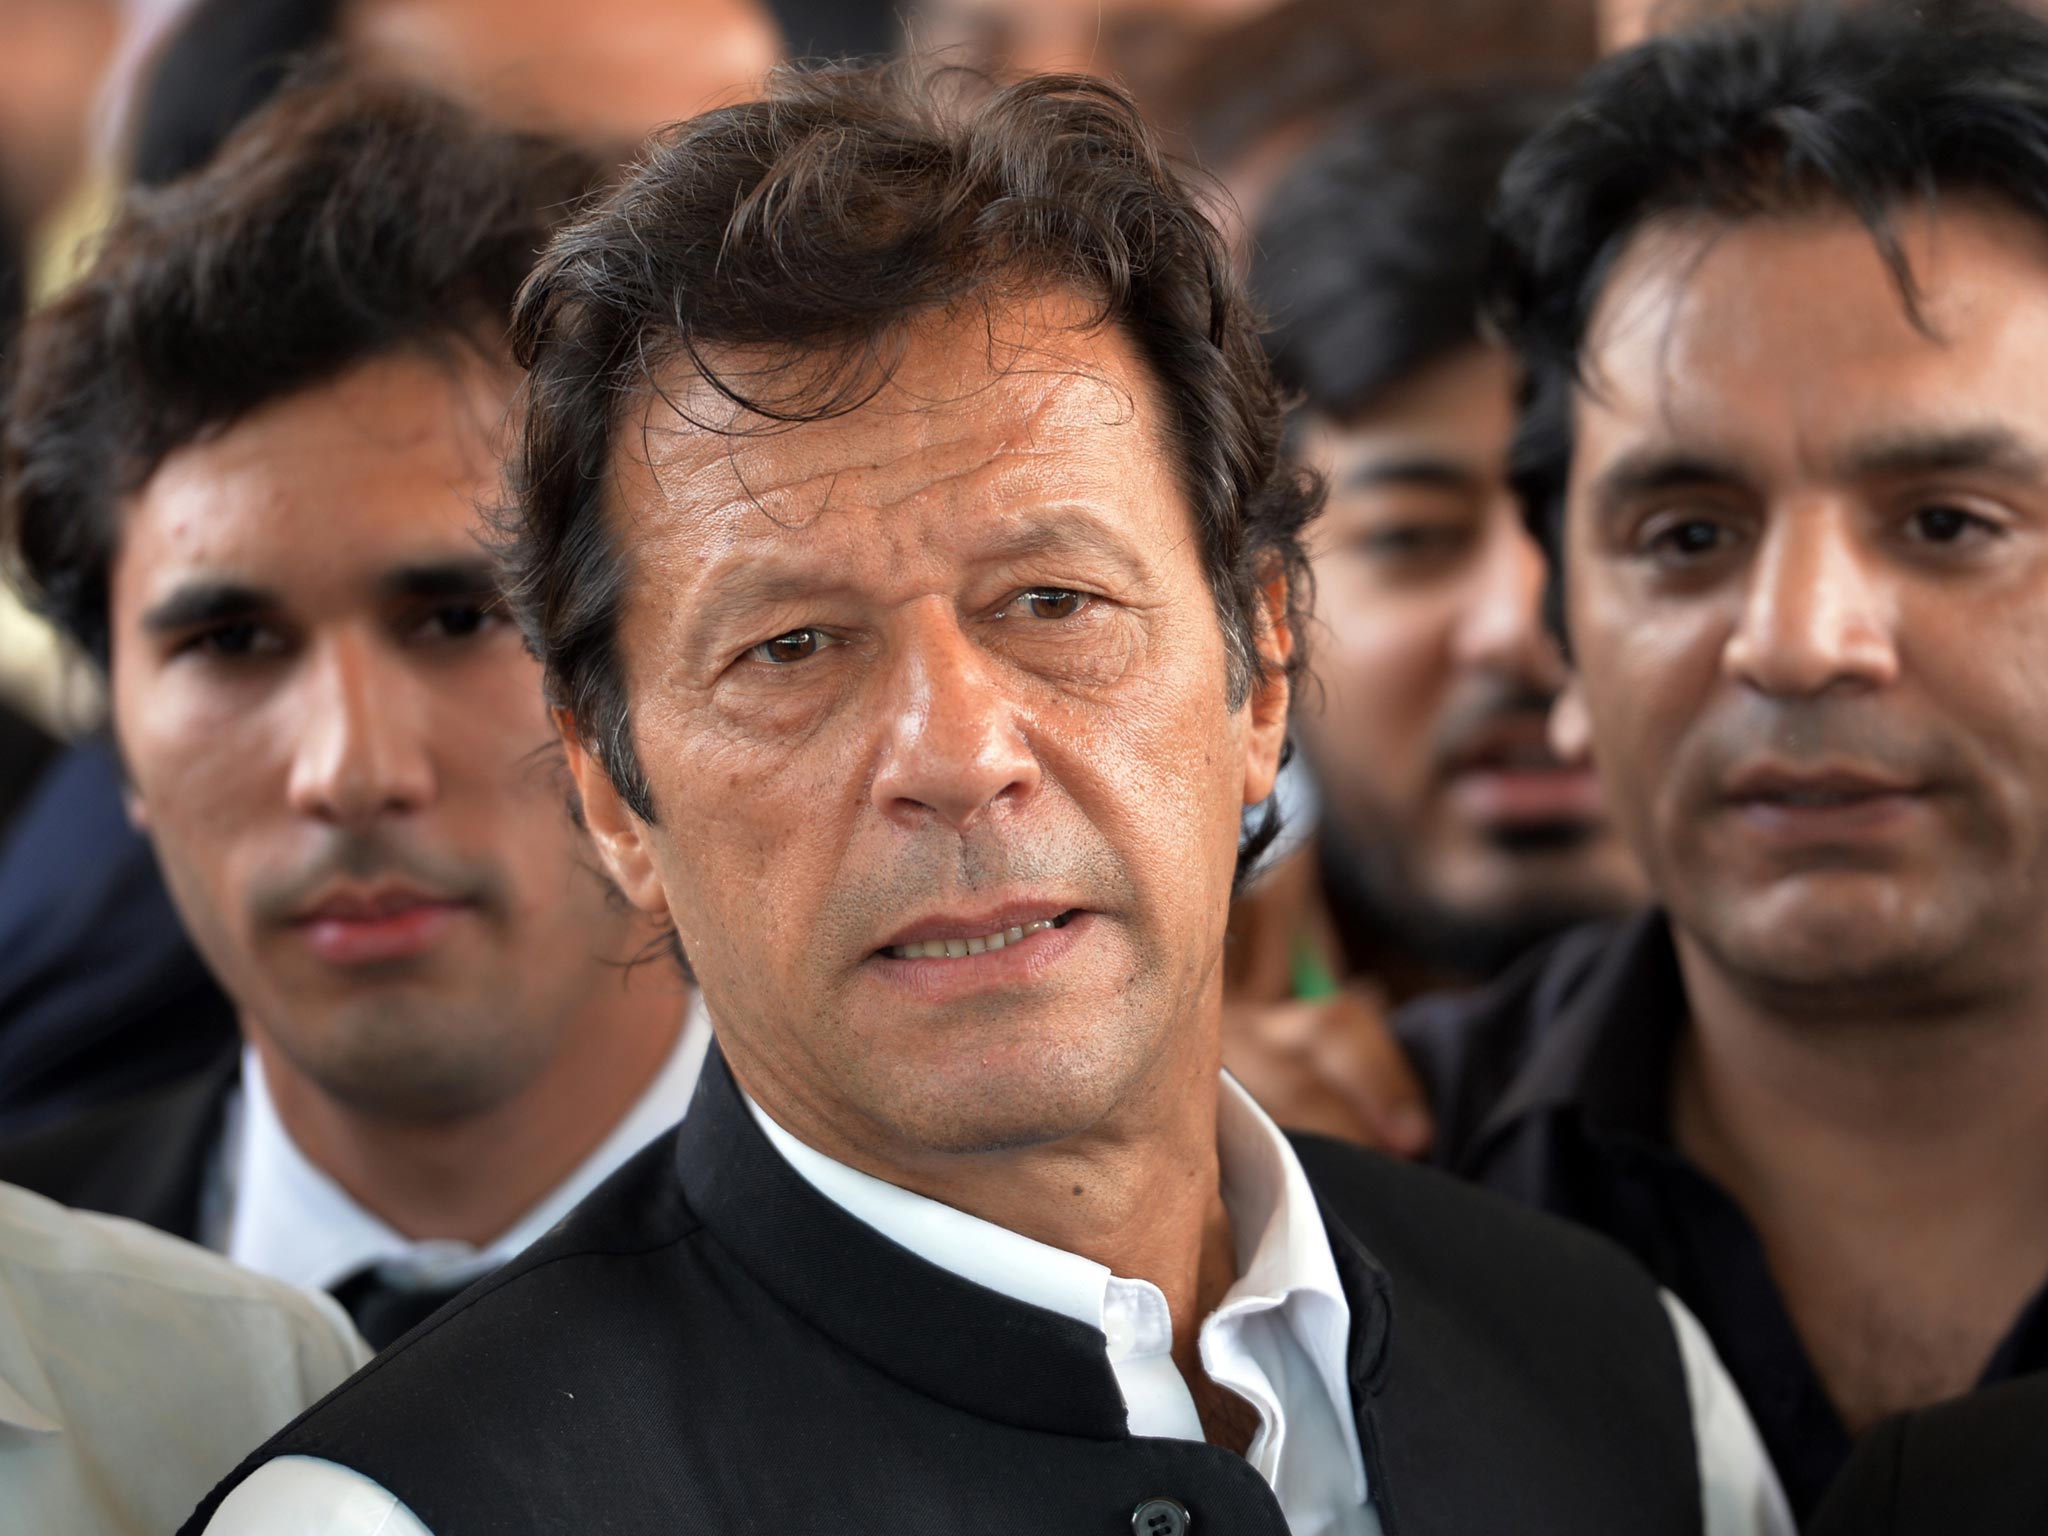 Former cricket legend and opposition leader Imran Khan